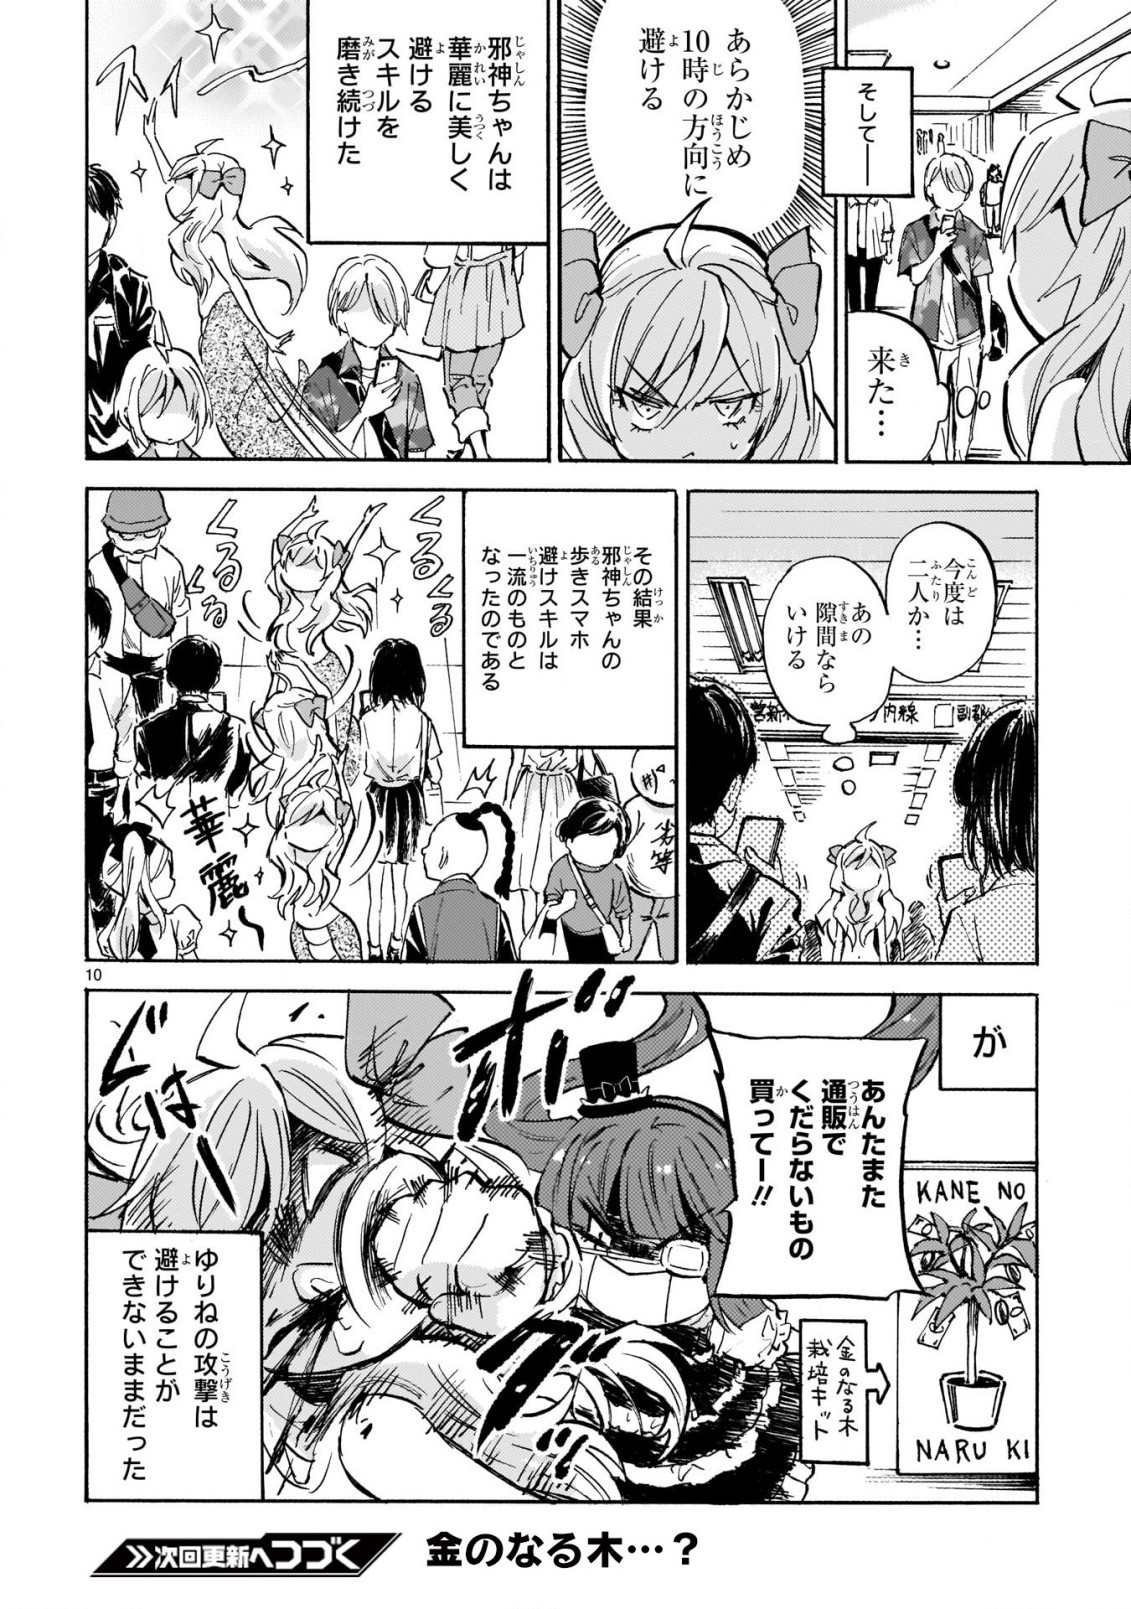 Jashin-chan Dropkick - Chapter 219 - Page 10